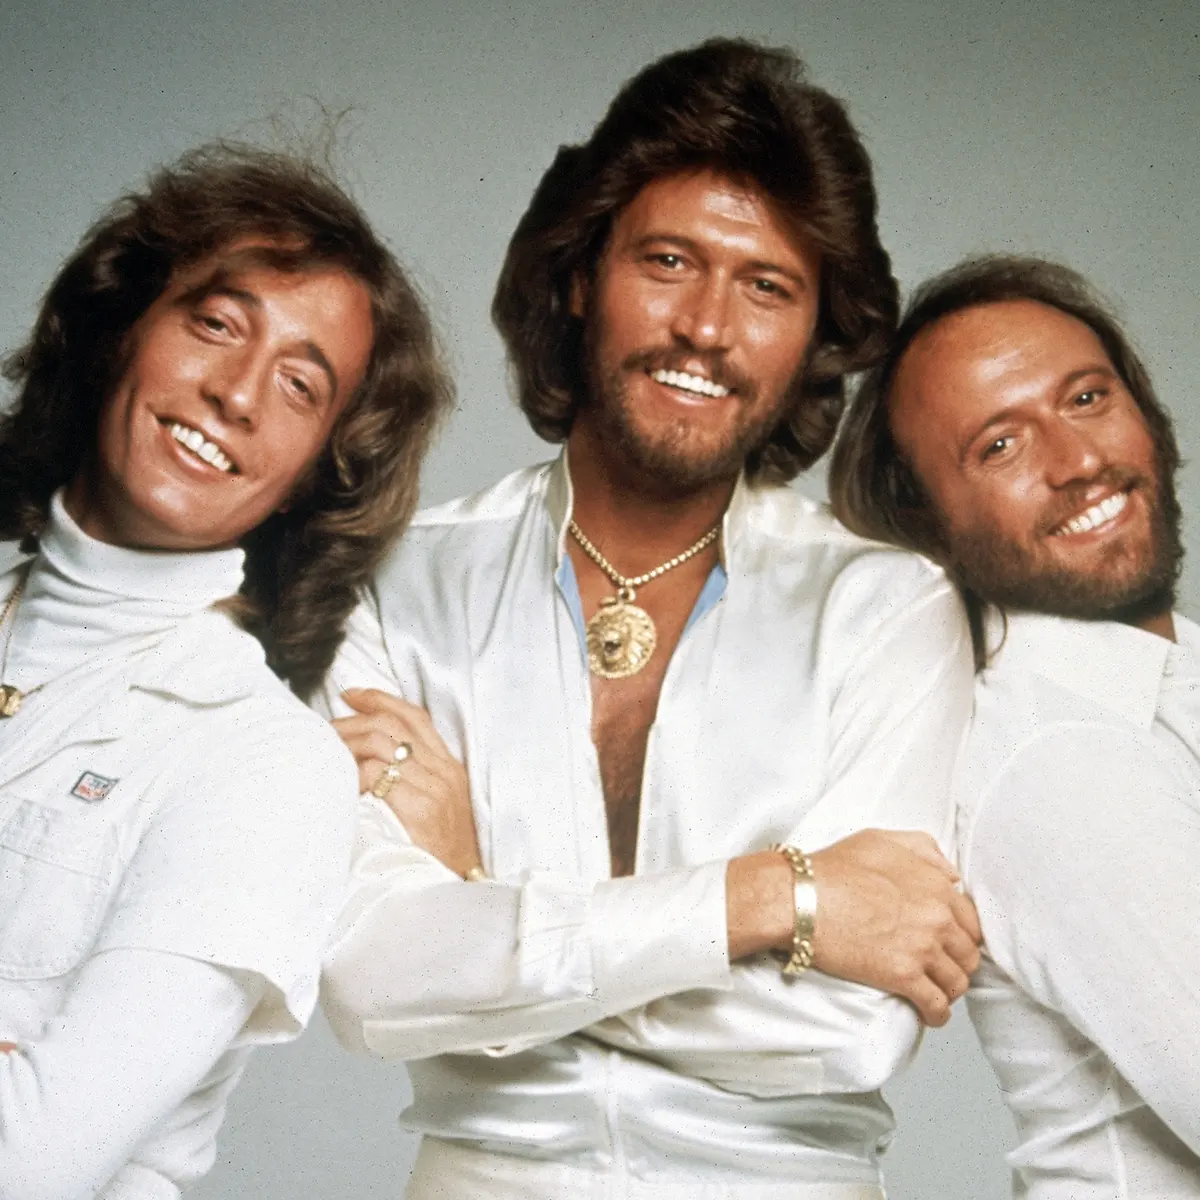 Ταινία για τους Bee Gees στα σκαριά – Διάσημος σκηνοθέτης θα αναβιώσει την disco era